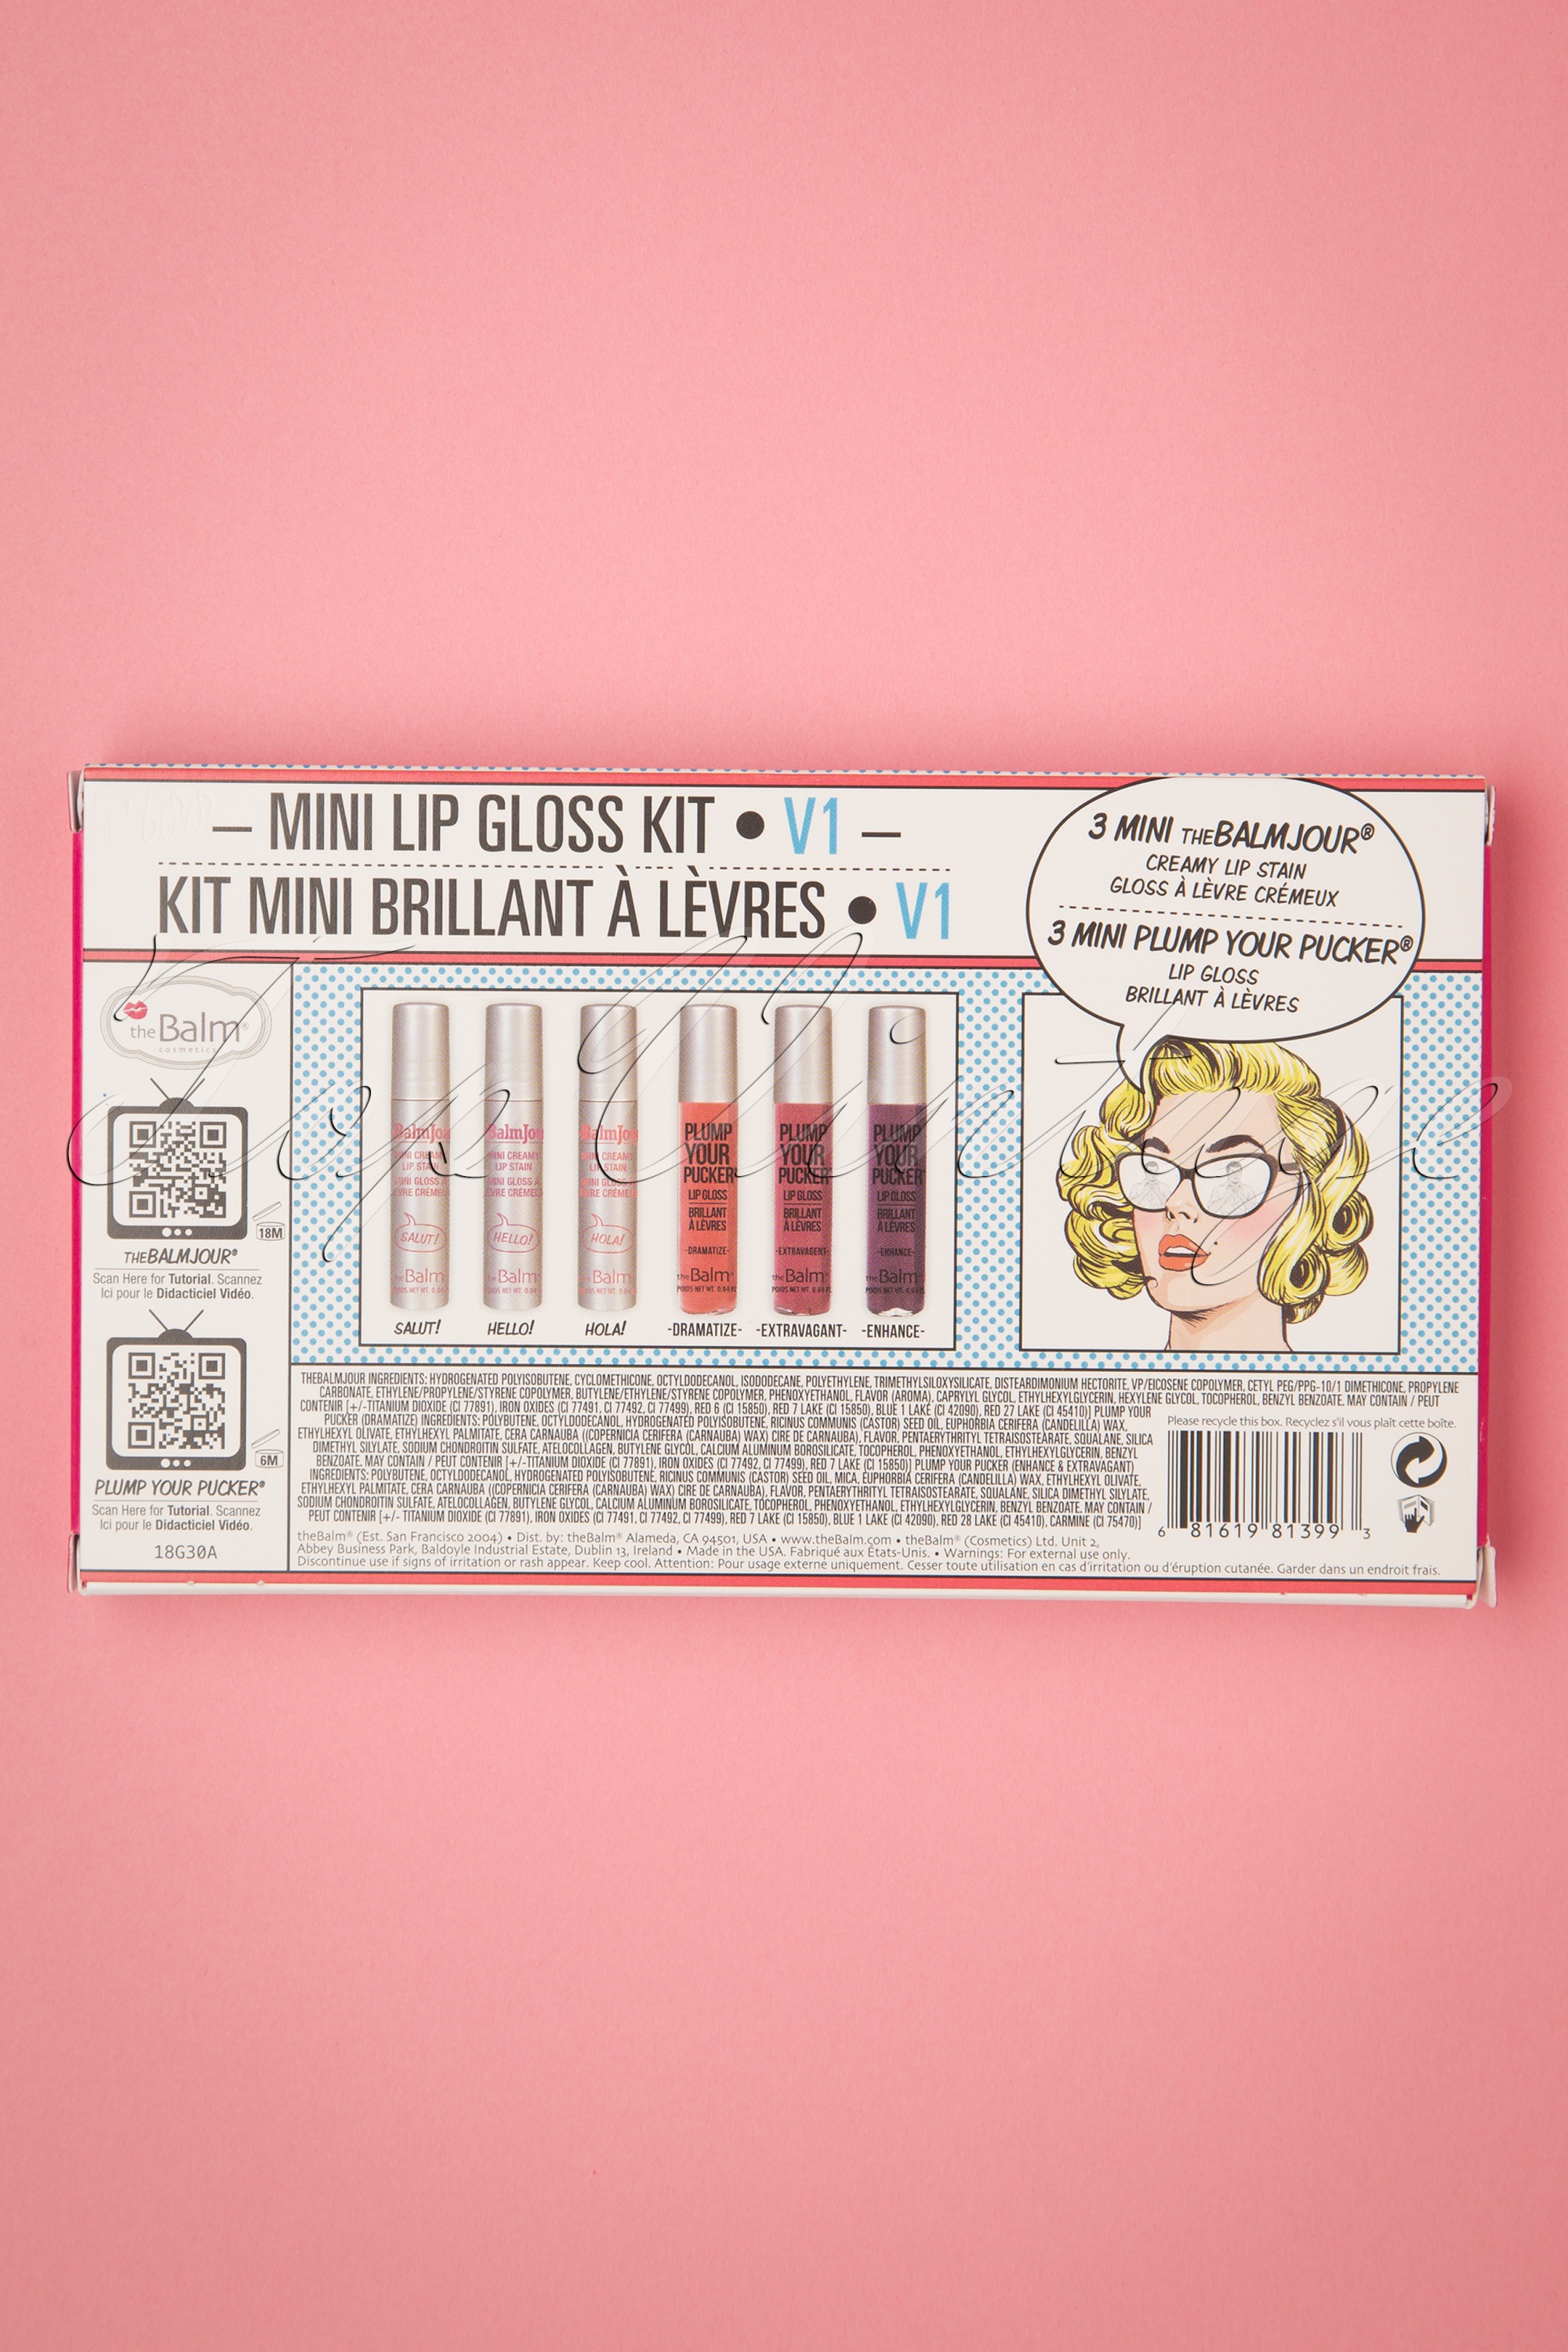 The Balm - Mini Lipgloss Kit Vol. 1 4